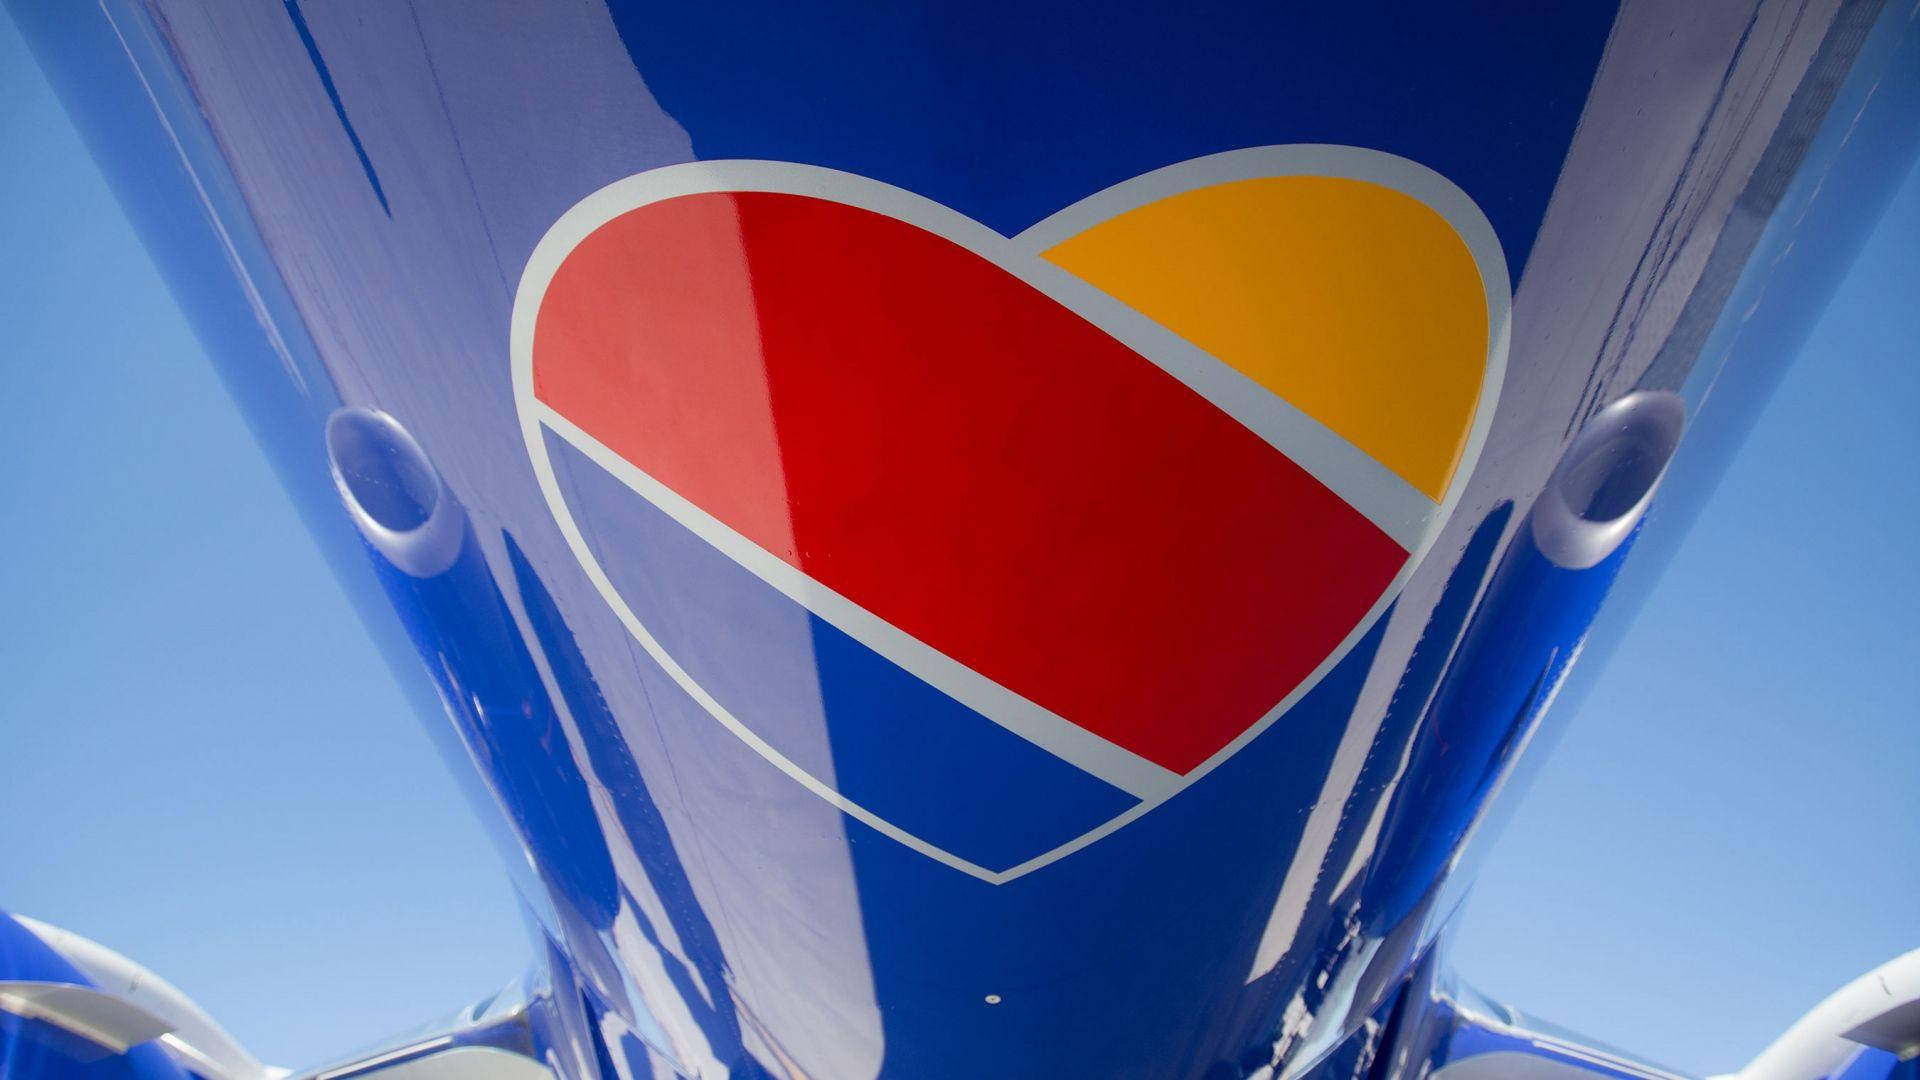 Närbildpå Southwest Airlines Logotyp. Wallpaper